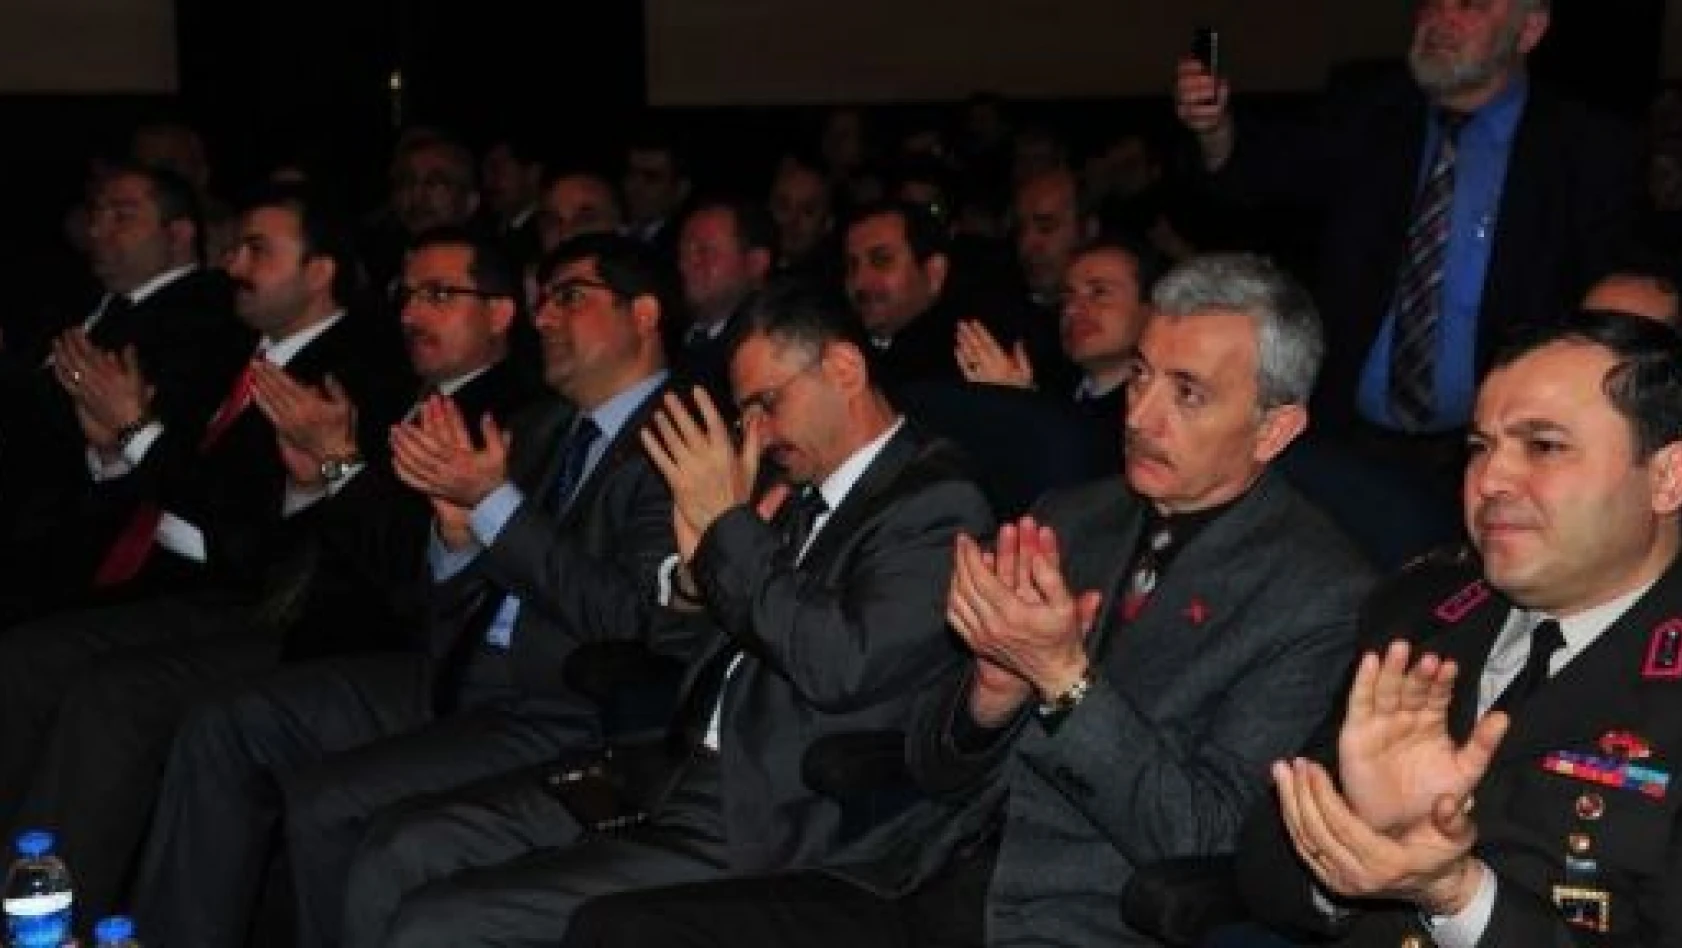 İstiklal Marşı'nın Kabulü ve Mehmet Akif Ersoy'u Anma Günü